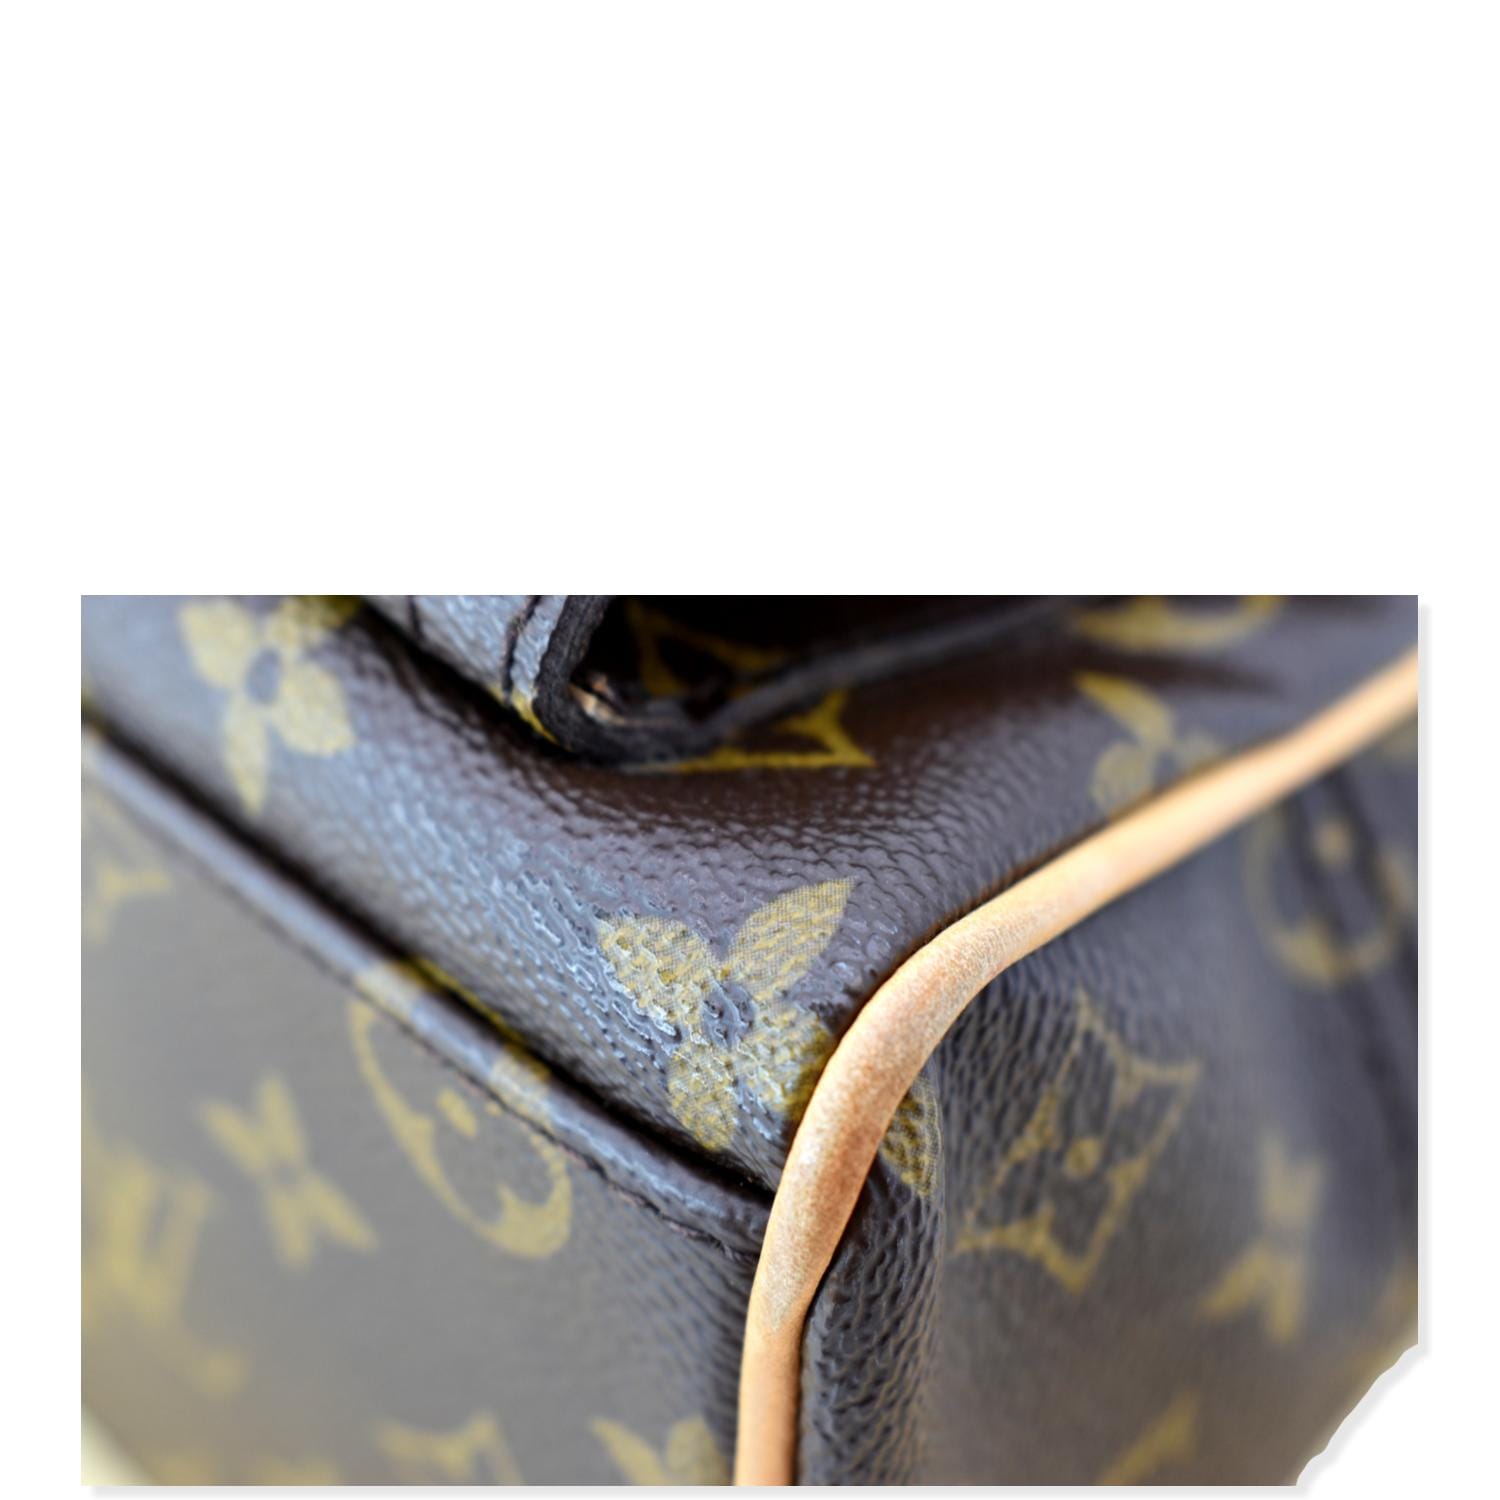 Louis Vuitton Manhattan PM Hand Bag - Farfetch